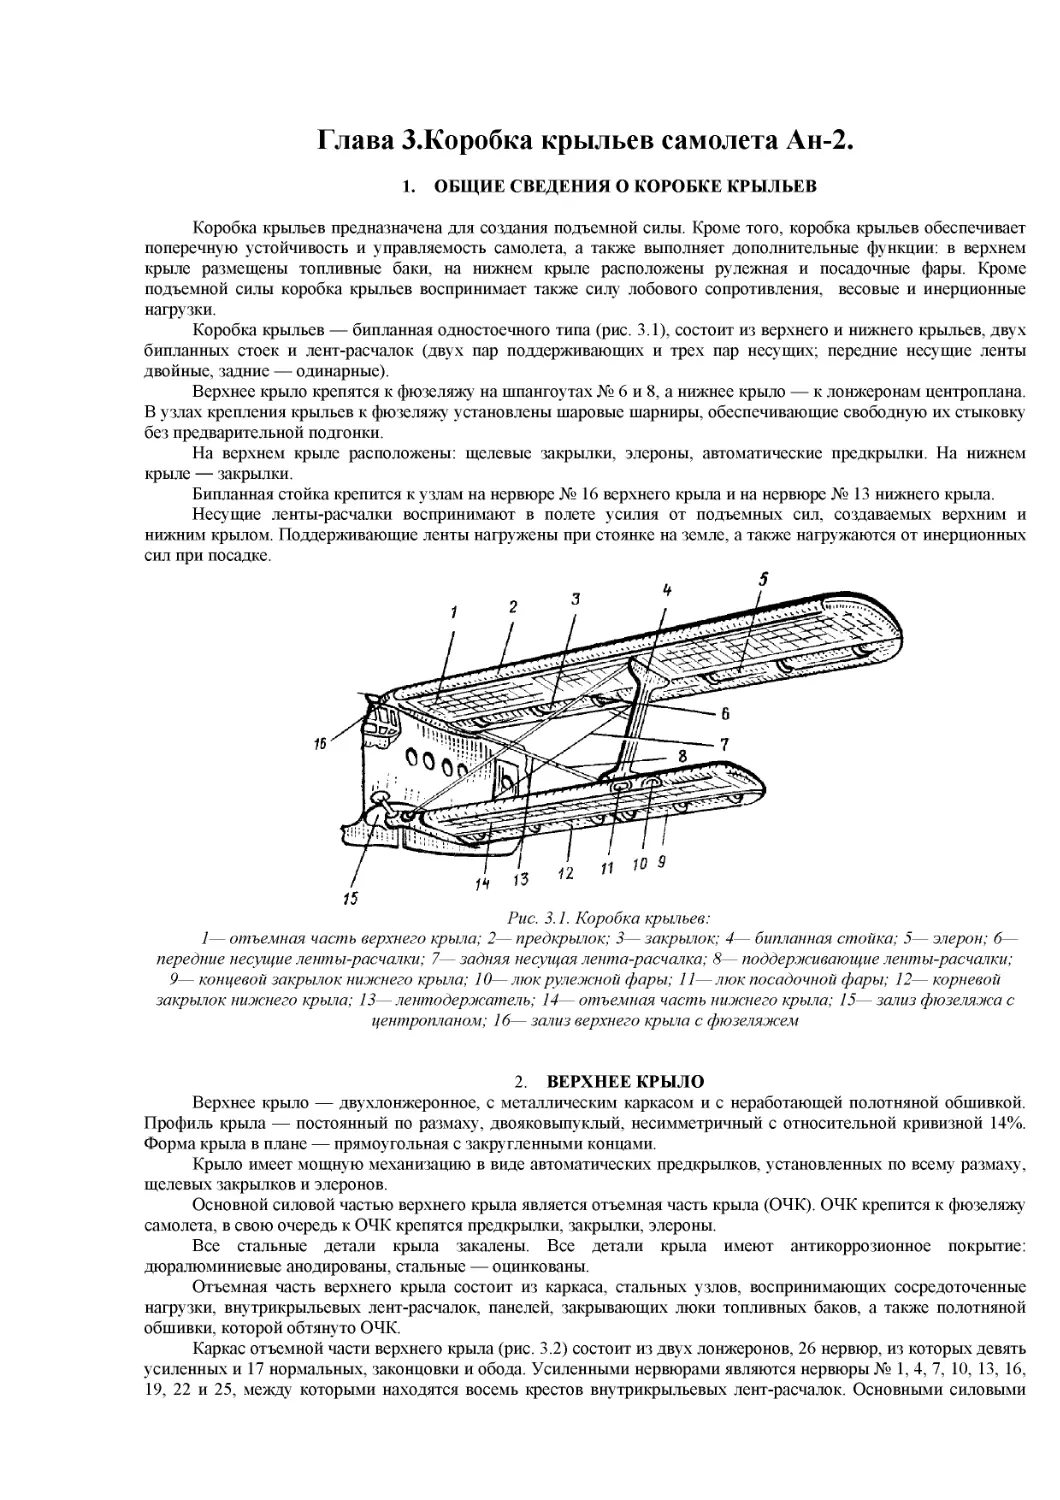 Глава 3.Коробка крыльев самолета Ан-2
1. ОБЩИЕ СВЕДЕНИЯ О КОРОБКЕ КРЫЛЬЕВ
2. ВЕРХНЕЕ КРЫЛО